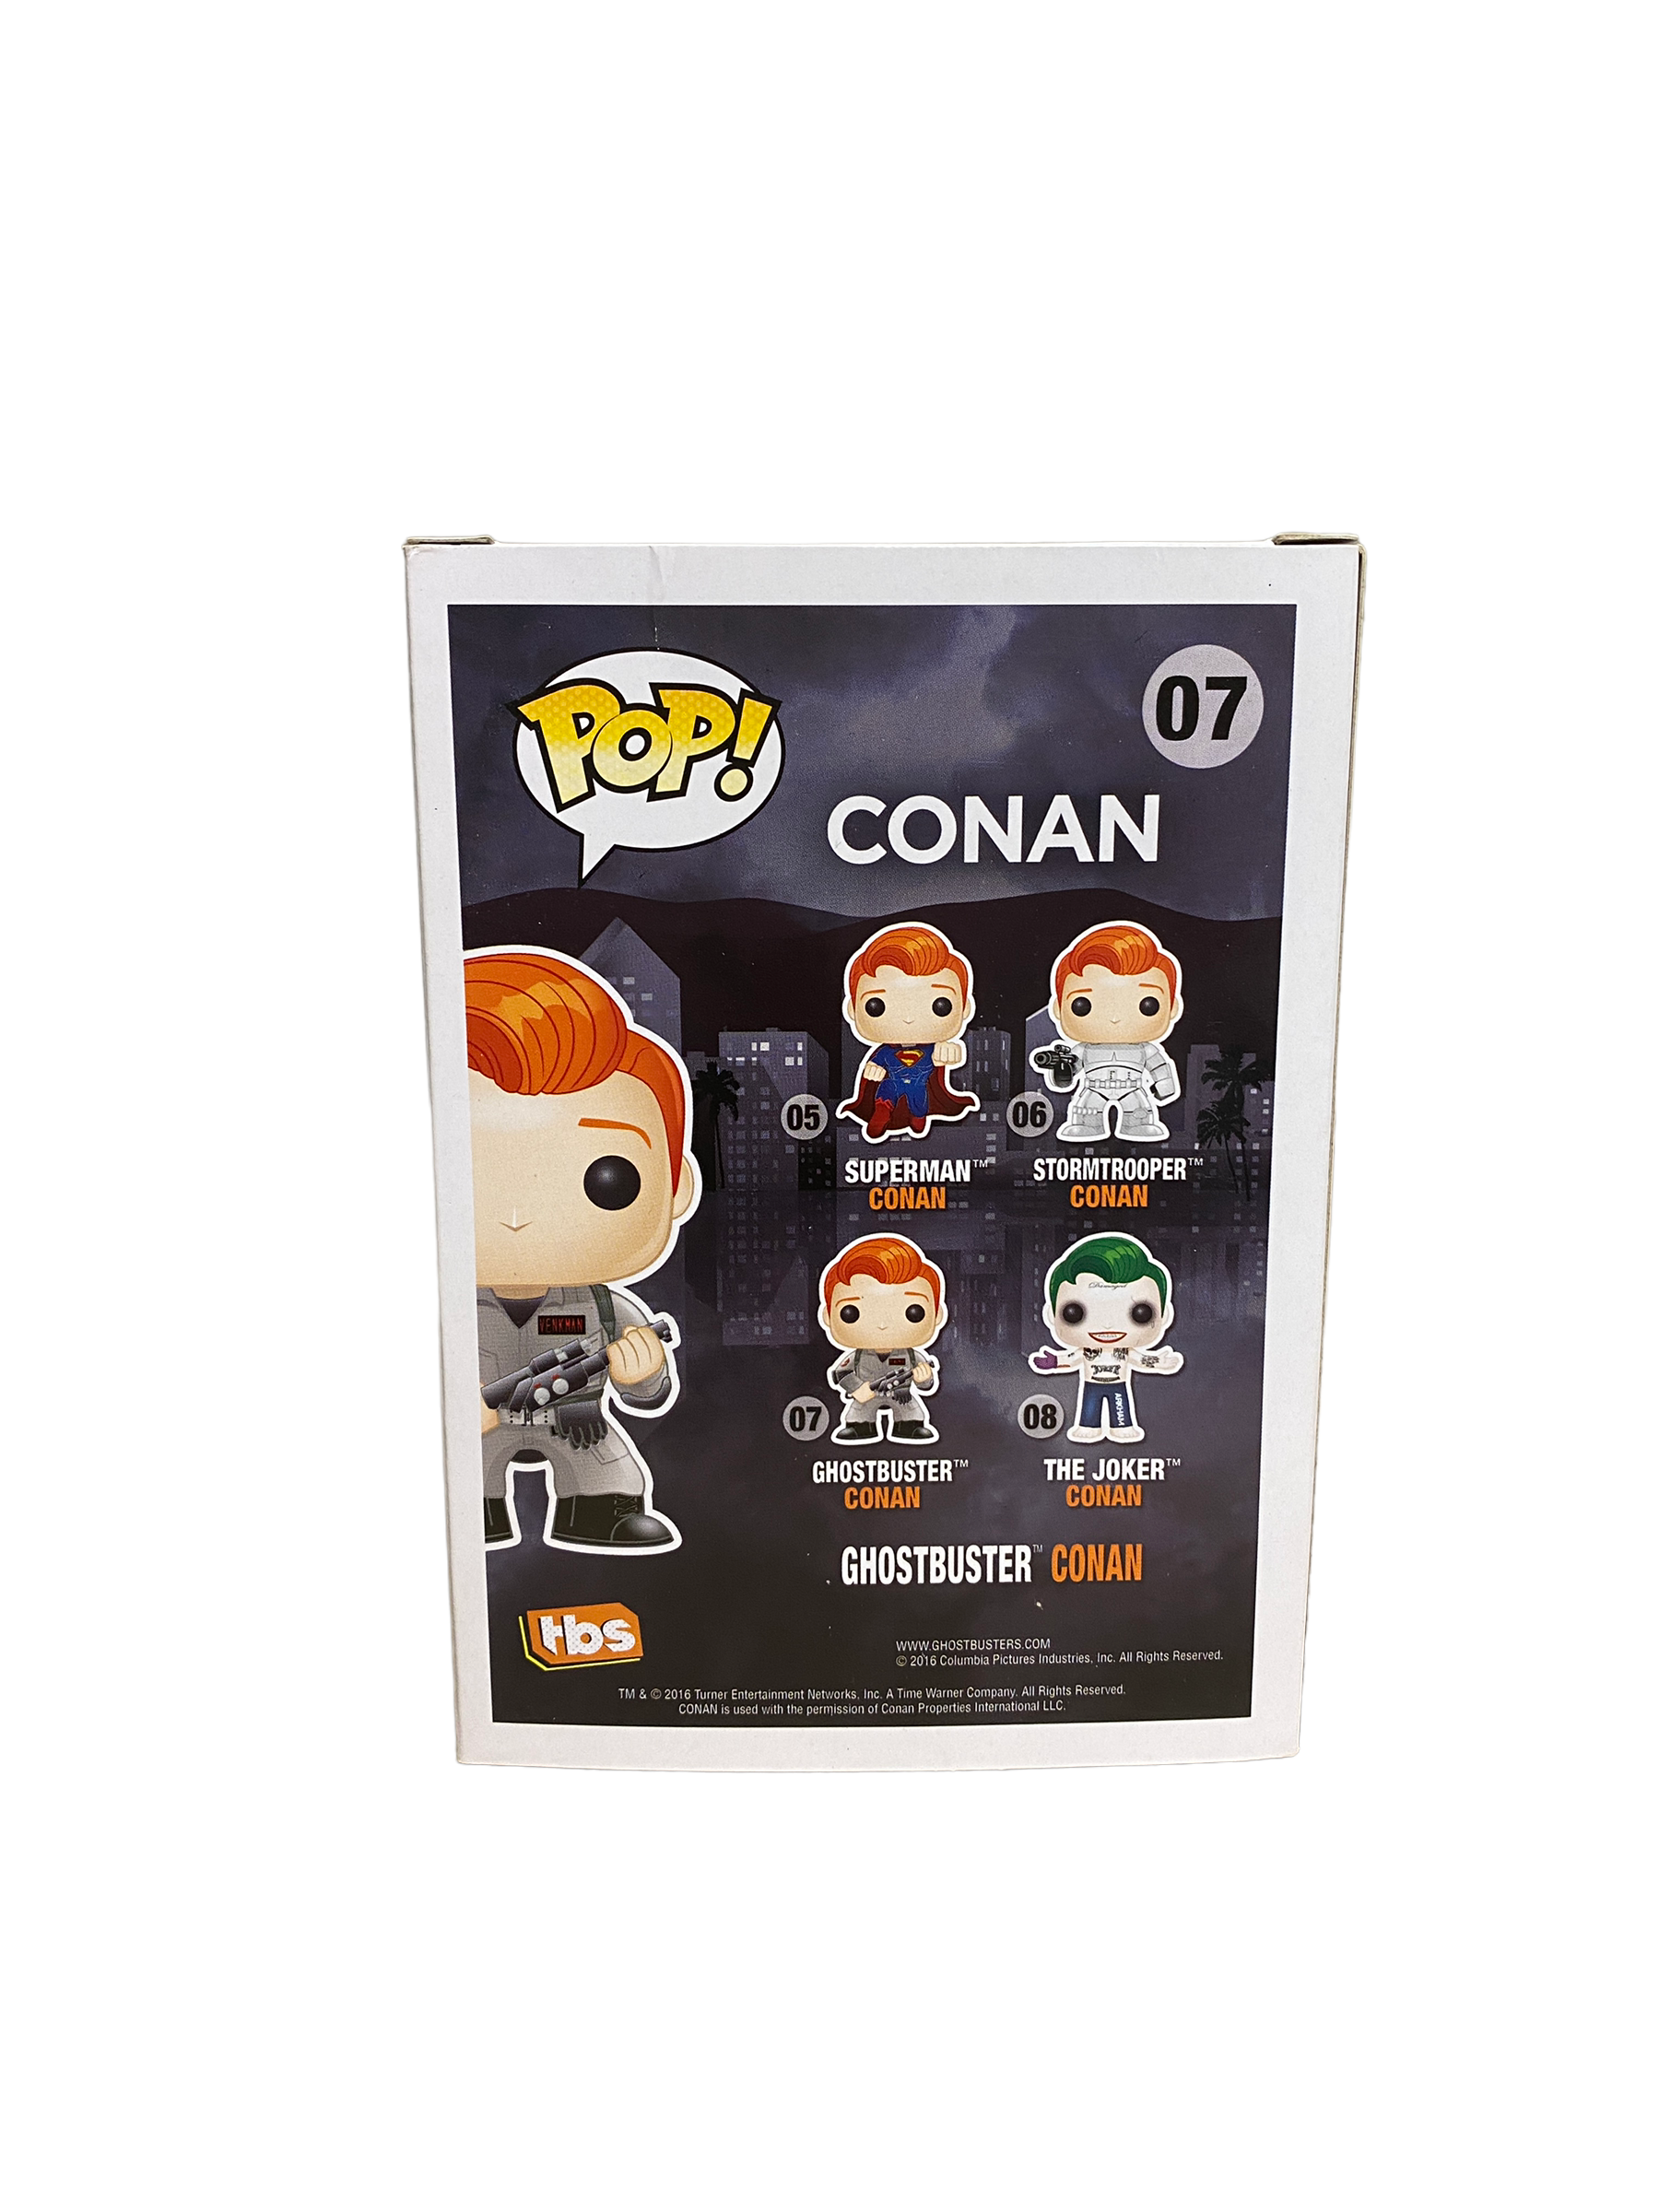 Ghostbuster Conan #07 Funko Pop! - Conan - SDCC 2016 Exclusive - Condition 7/10